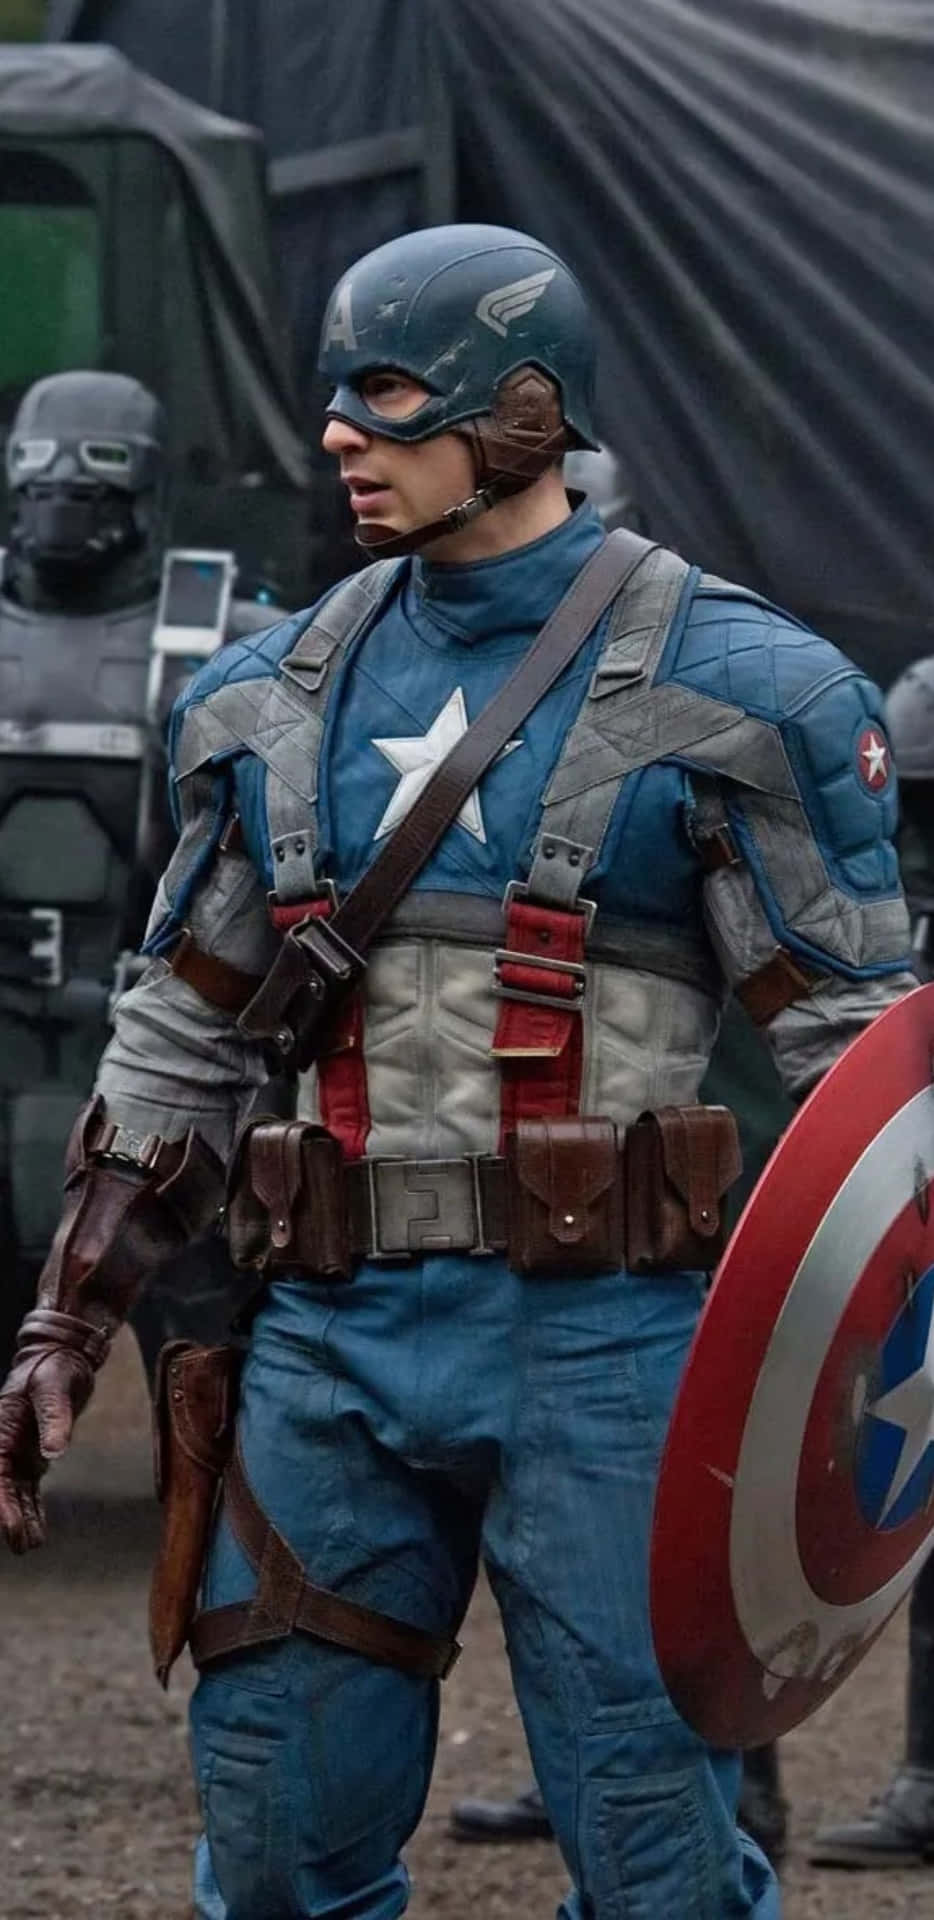 Pixel3xl Bakgrundsbild Med Captain America Från Captain America: The First Avenger.